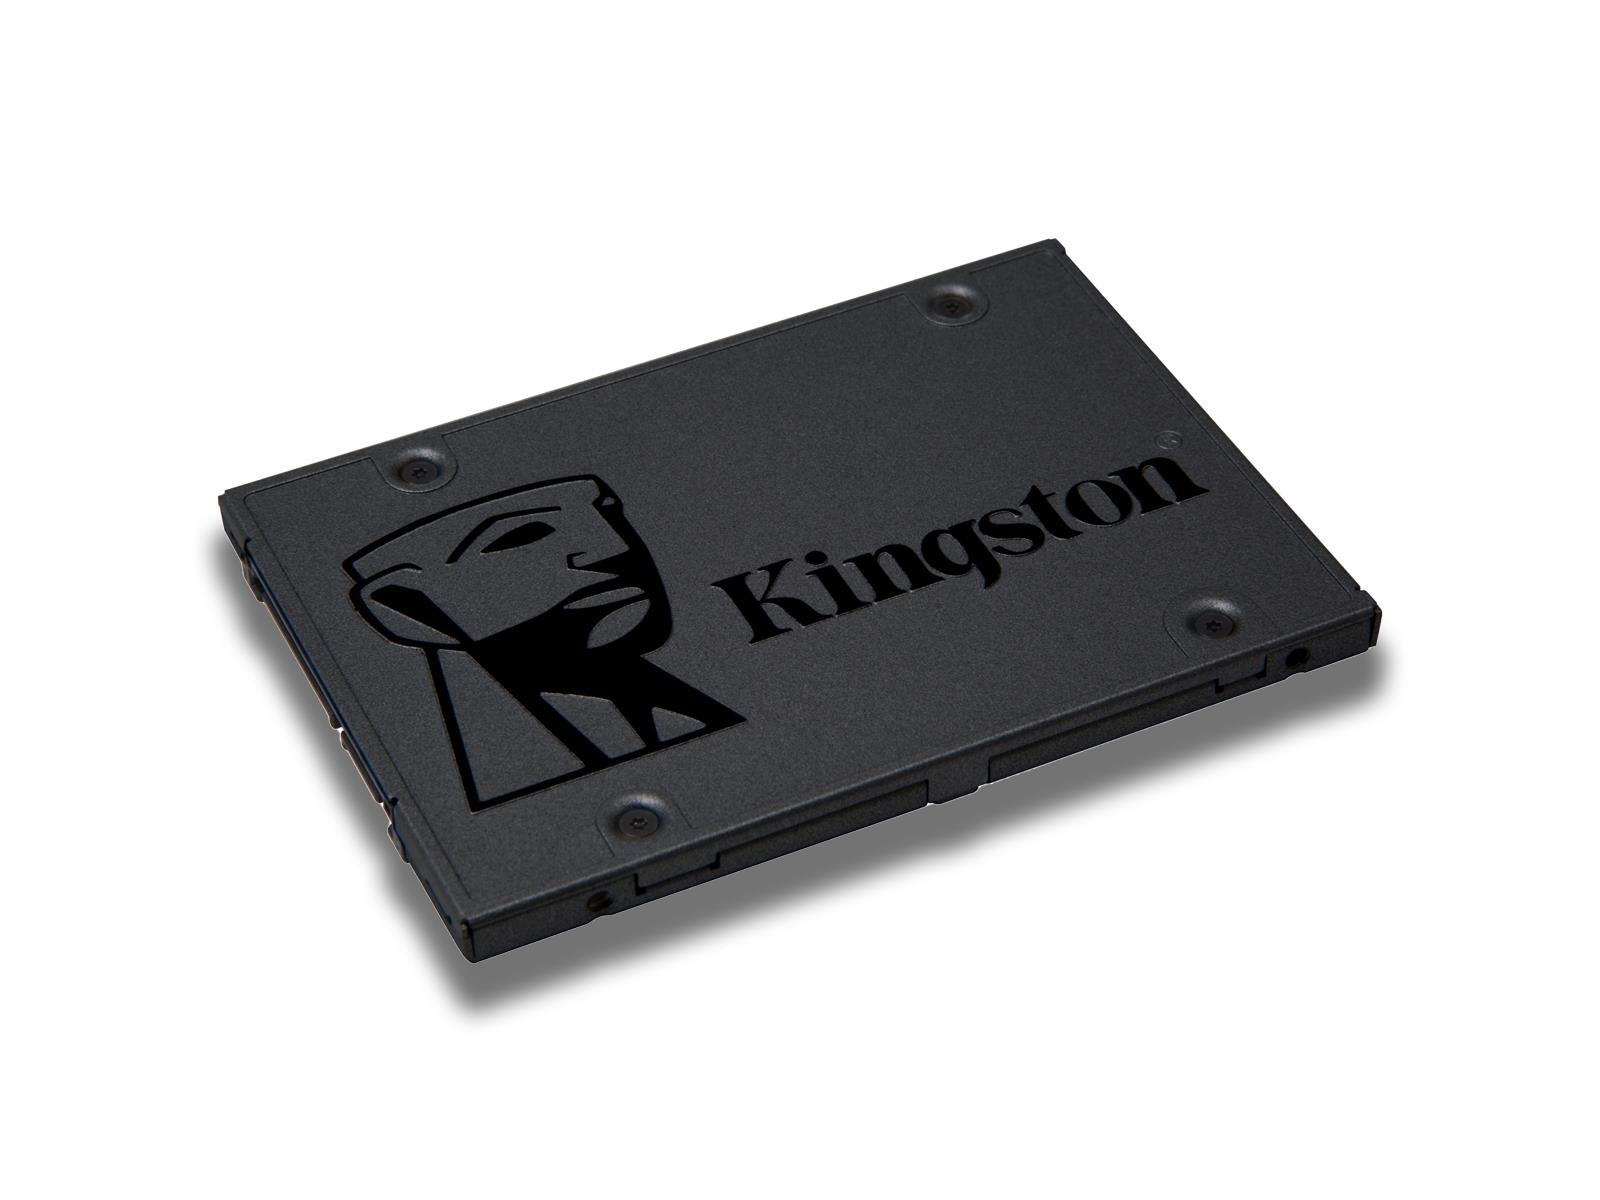 Kingston-A400 SSD Side View